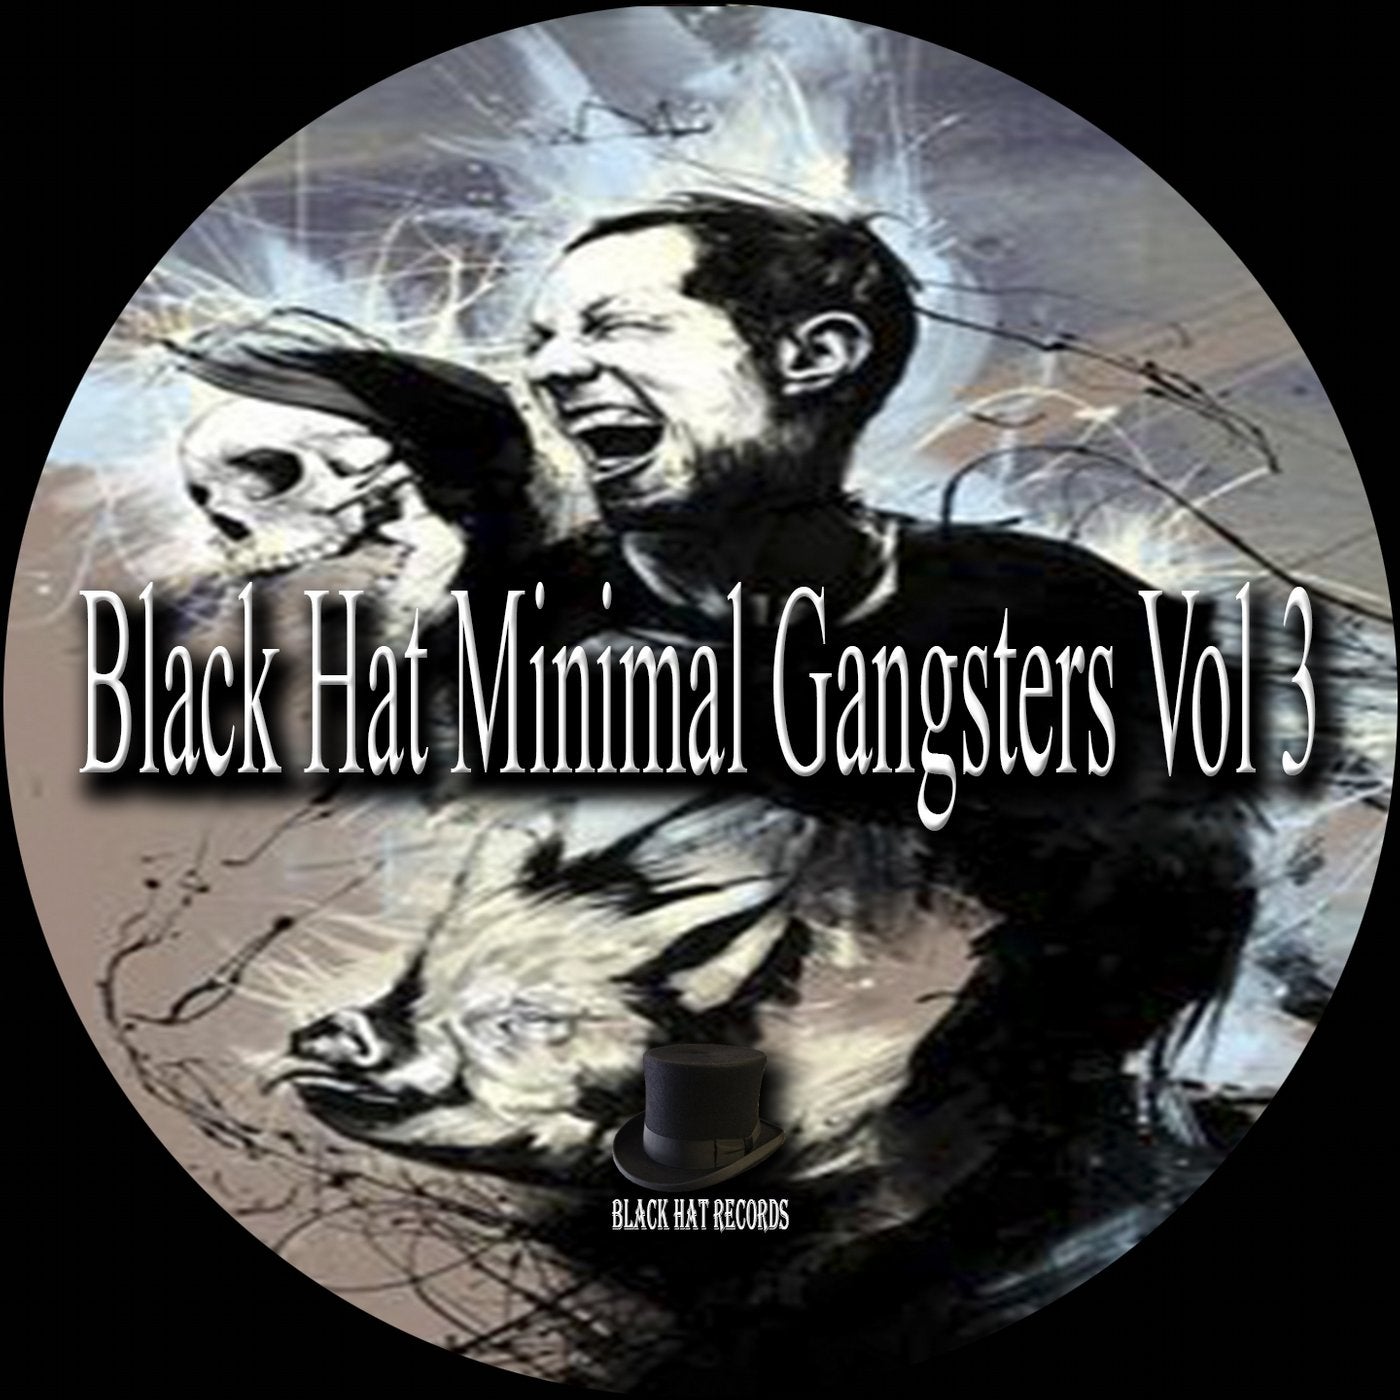 Black Hat Minimal Gangsters, Vol. 3